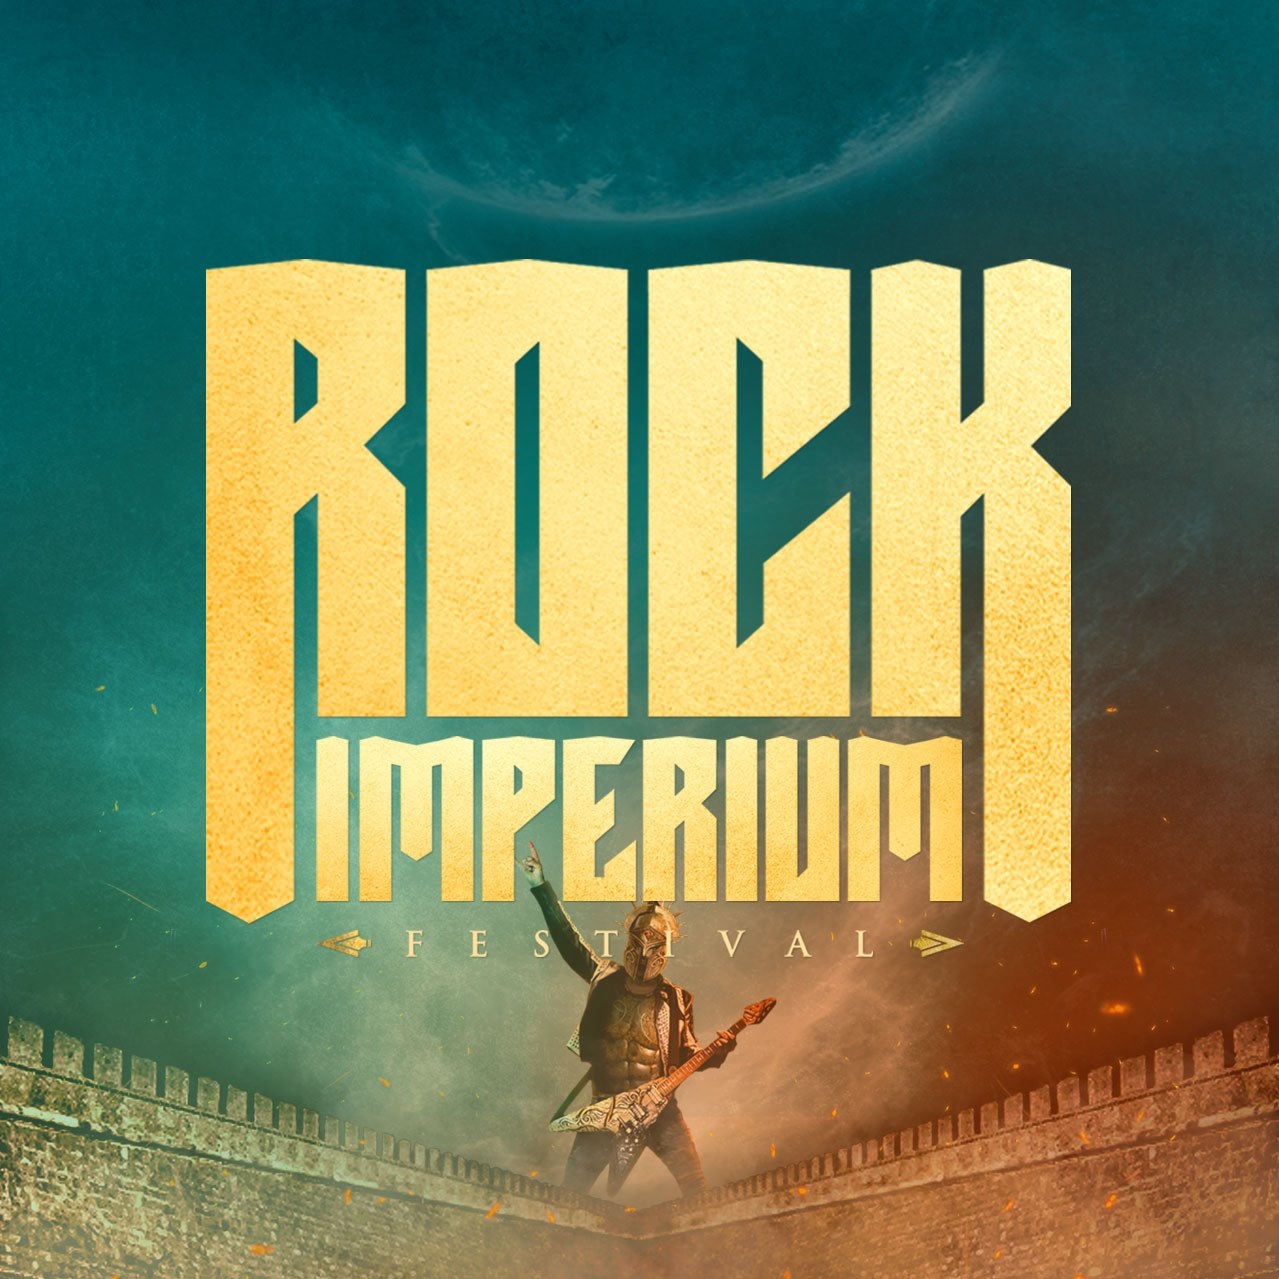 Rock Imperium Festival 2022 anuncia el cartel por días